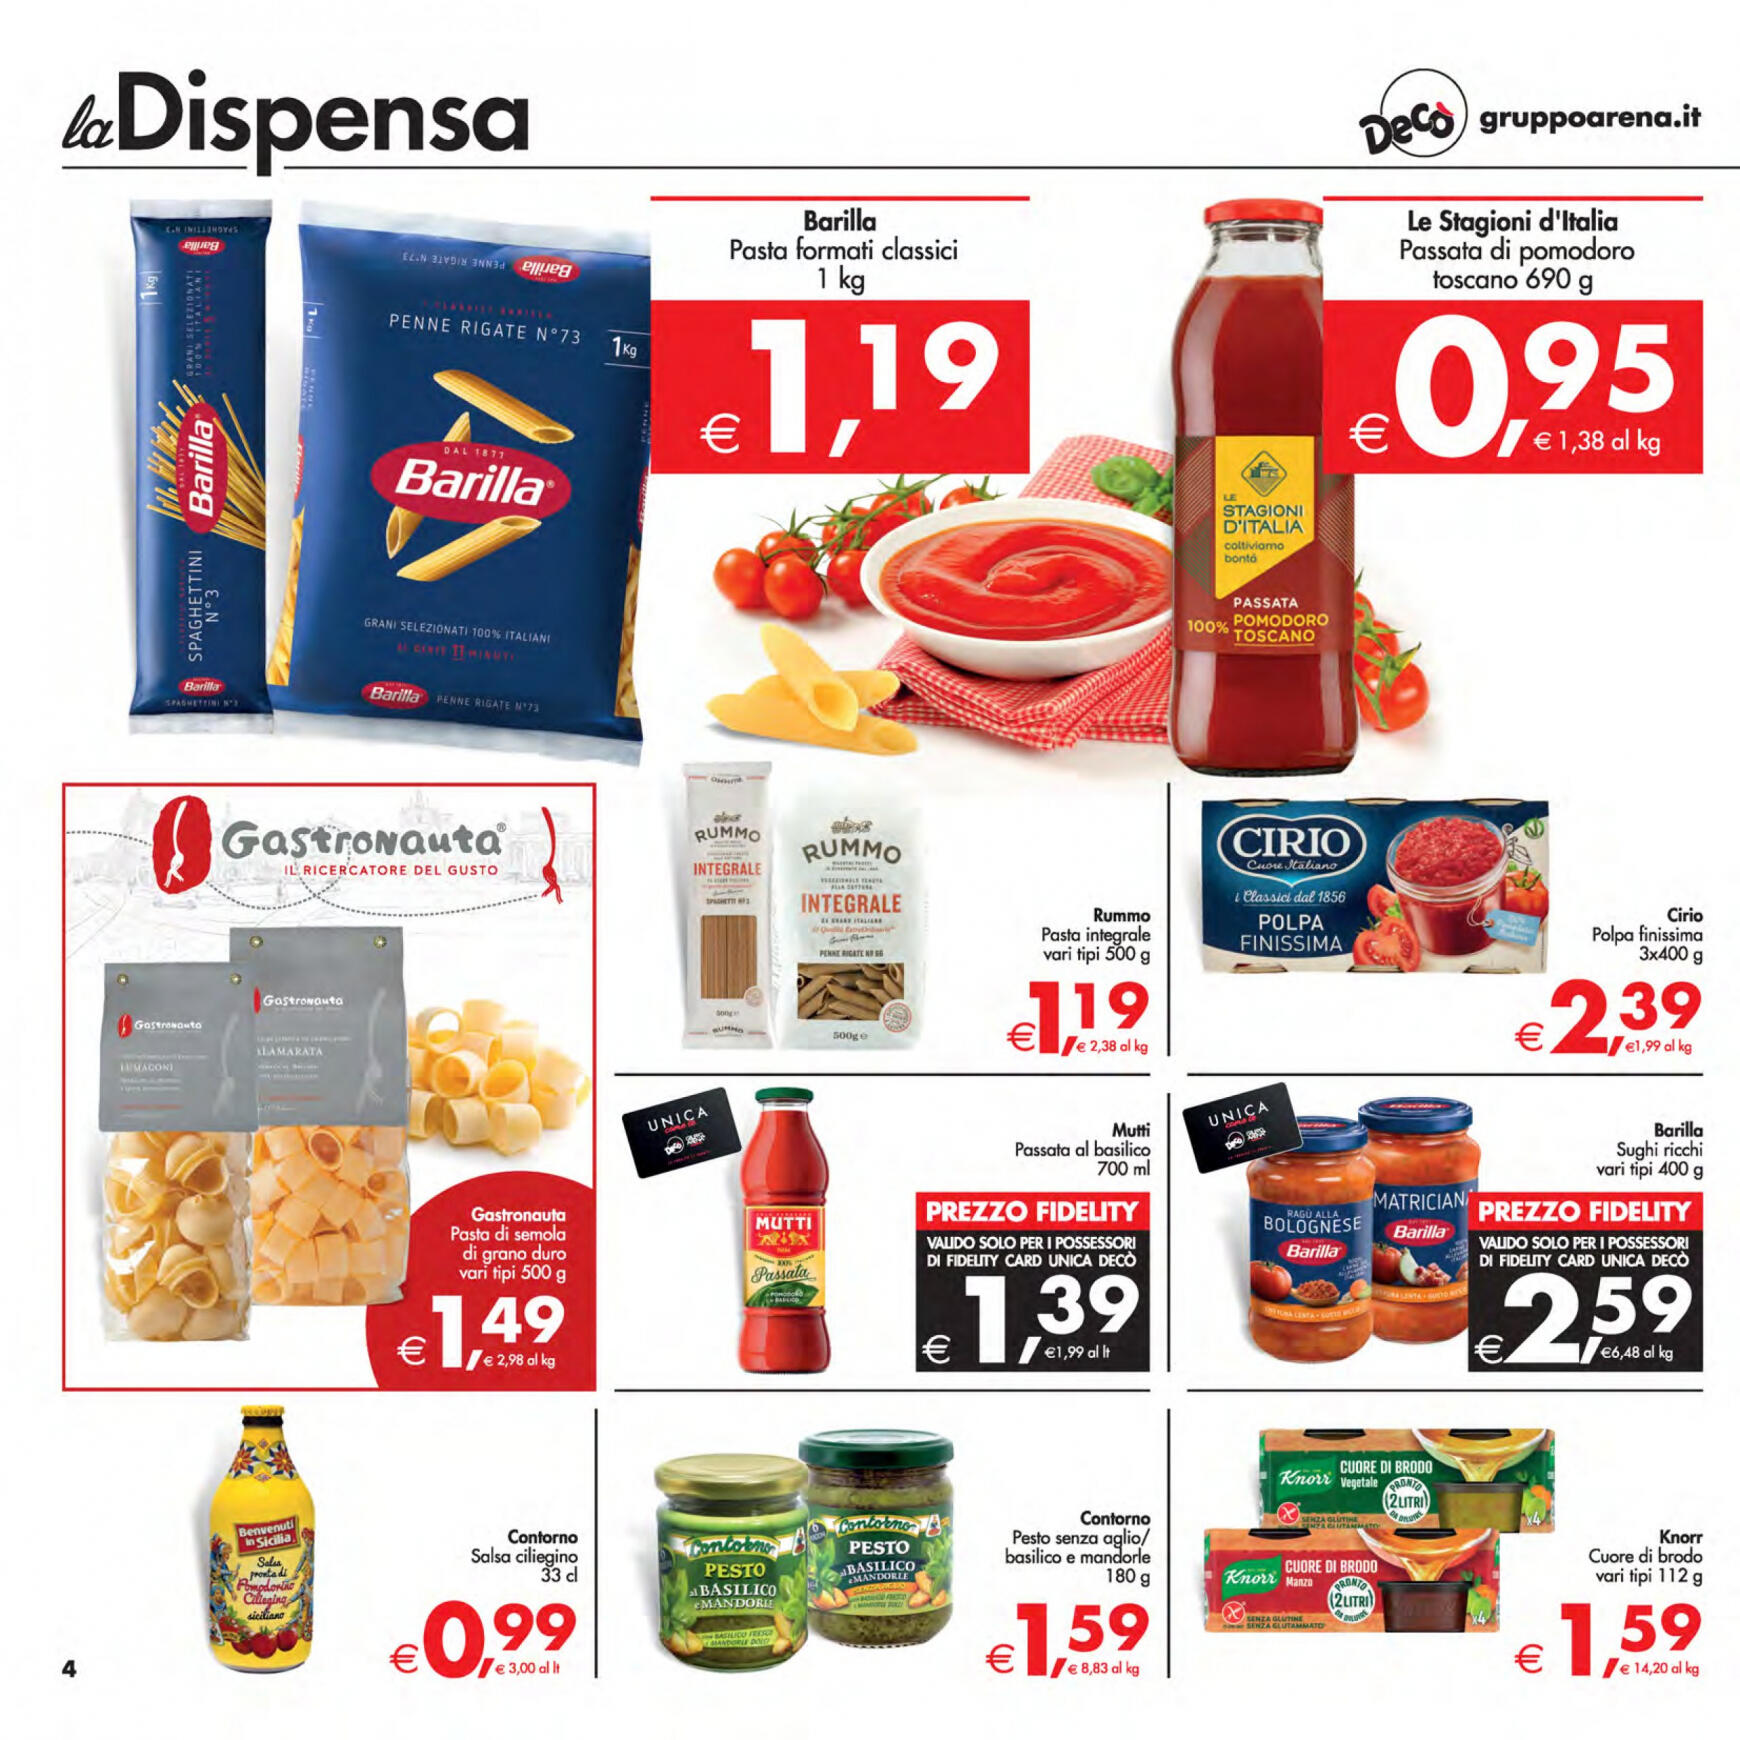 deco - Nuovo volantino Decò - Supermercati/Maxistore/Local 23.04. - 02.05. - page: 4